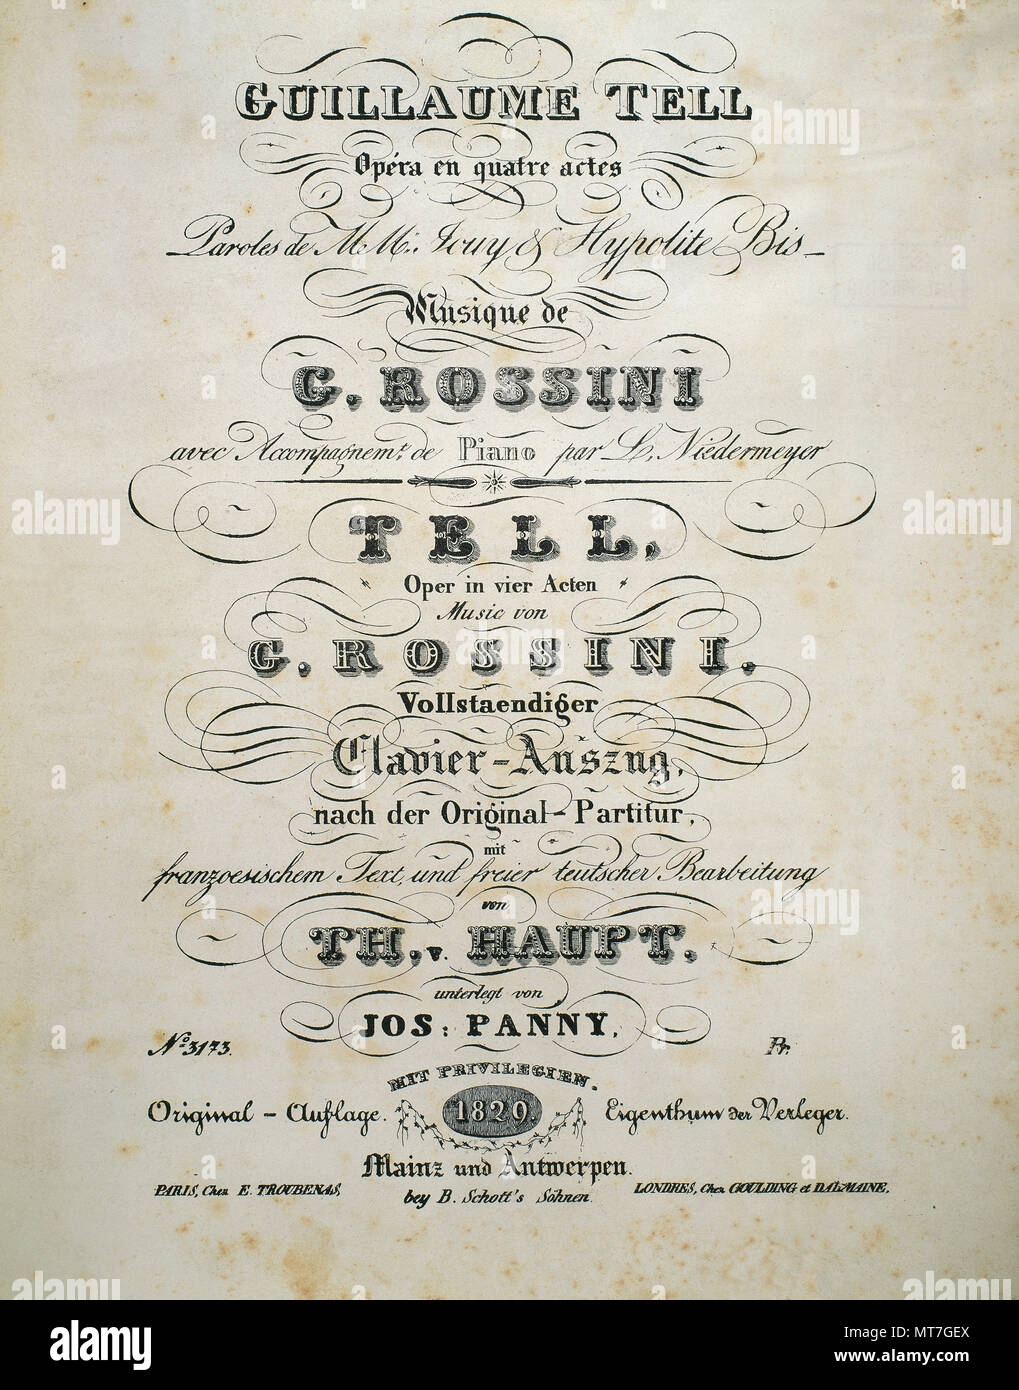 Gioachino Rossini (Pésaro, 1792-París, 1868). Compositor italiano. Cubierta de la partitura de 'William Tell'. En idioma francés de ópera en cuatro actos. Estreno en 1829. Foto de stock